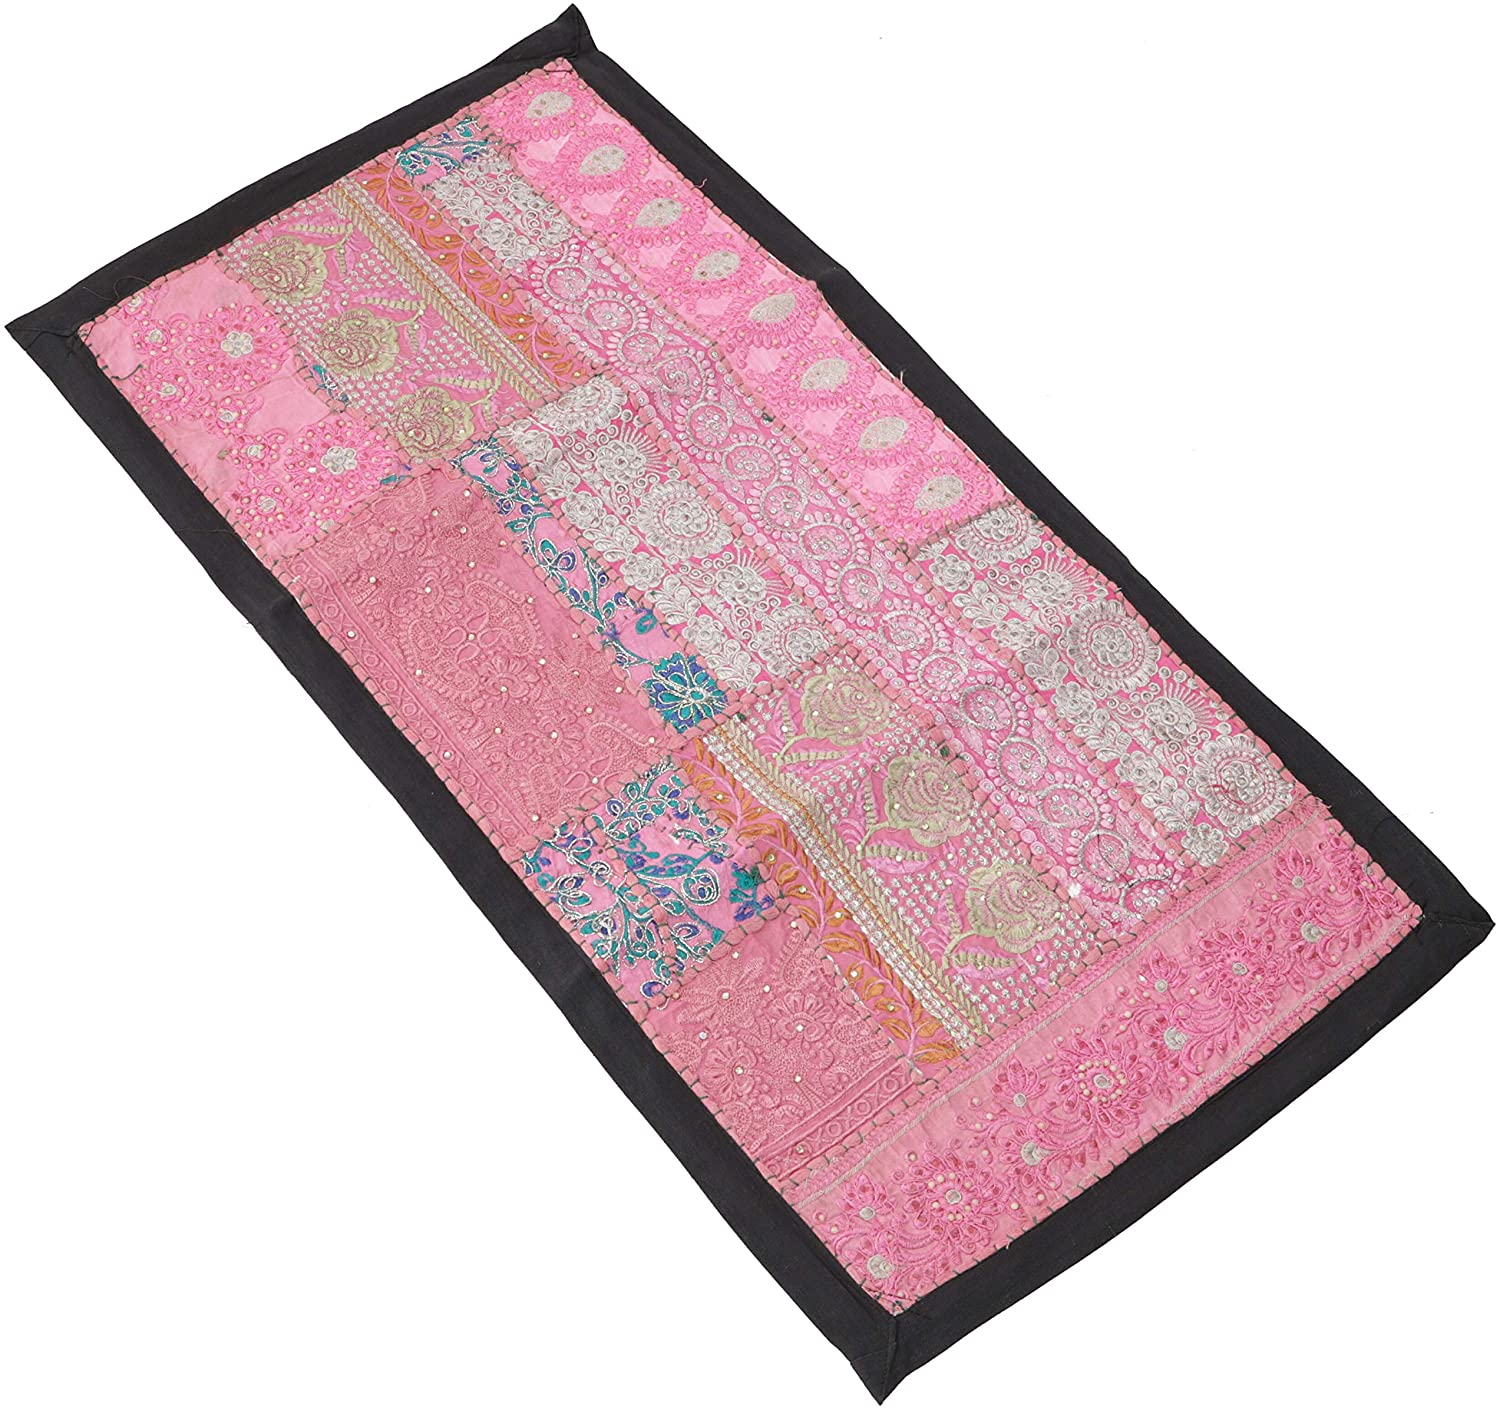 Guru-Shop GURU SHOP Oriental Table Runner, Wall Hanging, Single Piece, 85 x 45 cm, Motif 10, Pink, Cotton, Wall Bags & Wall Hangings